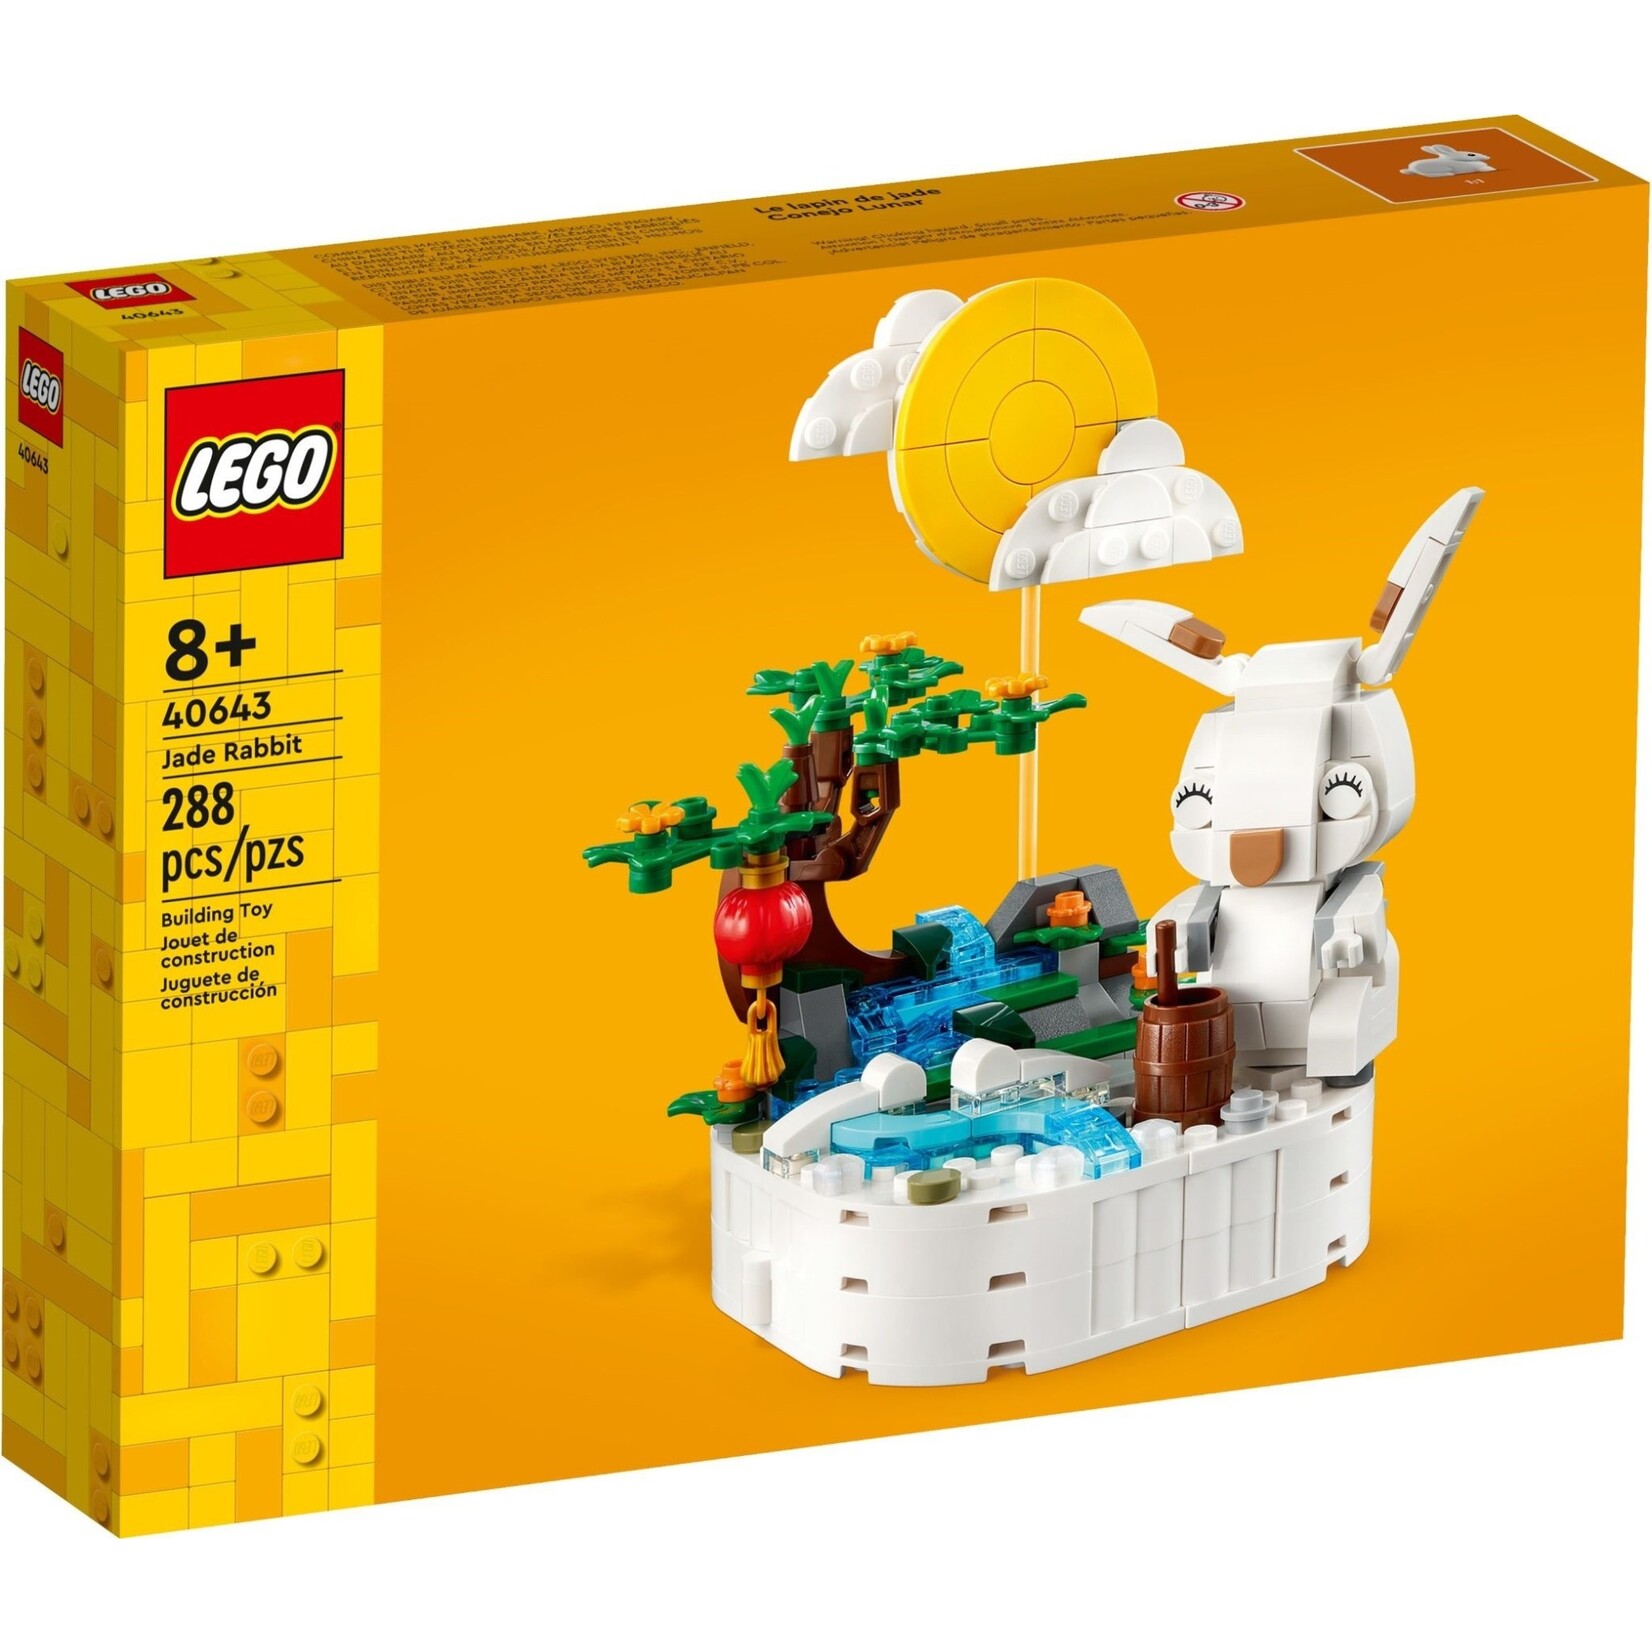 LEGO Maankonijn - 40643